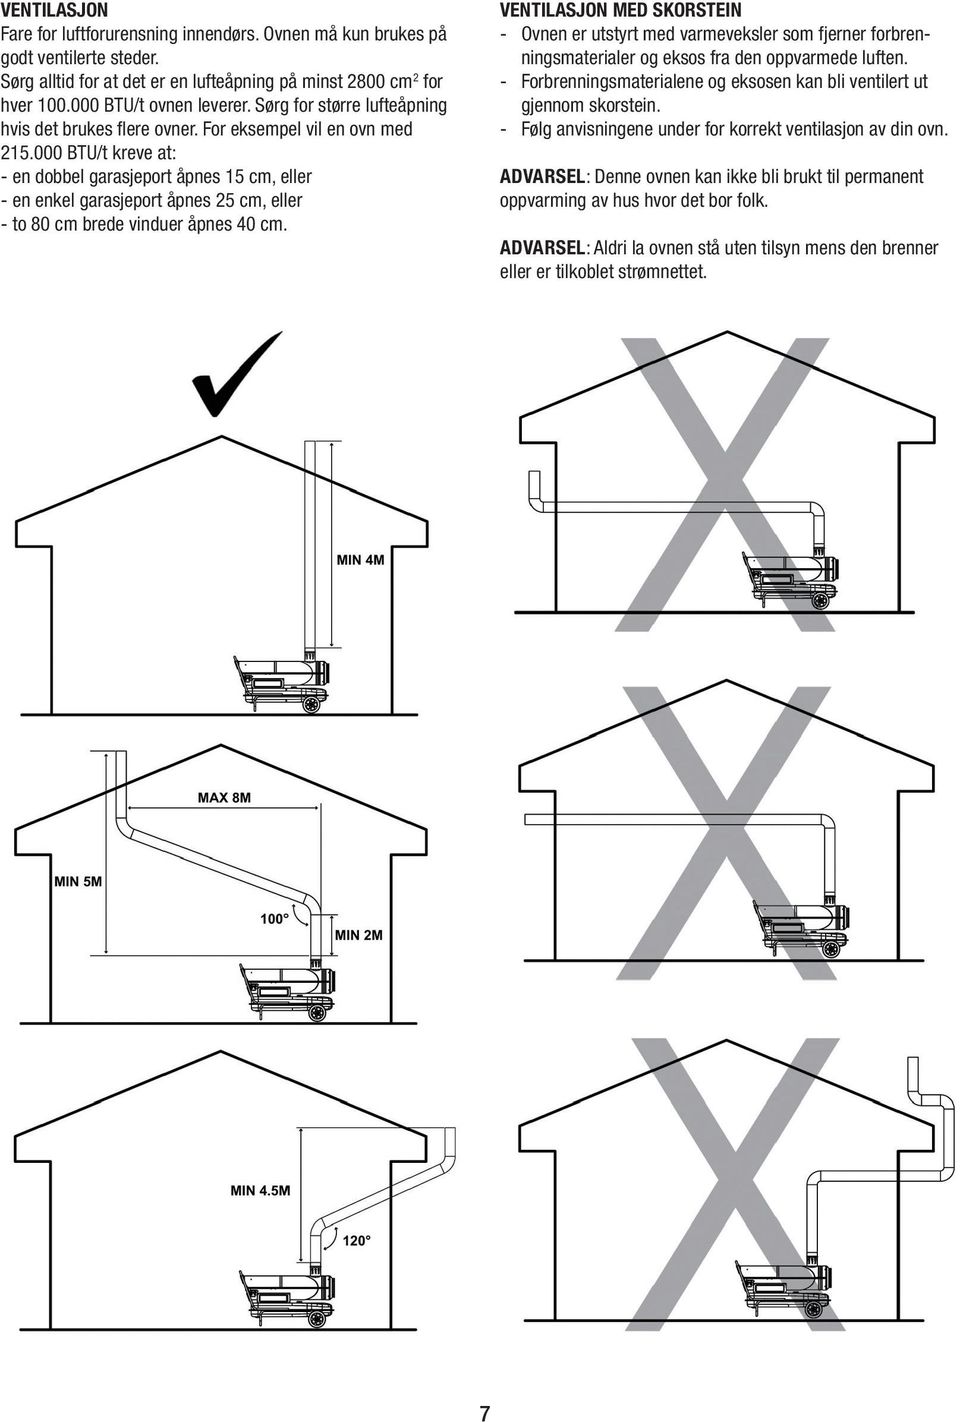 000 BTU/t kreve at: - en dobbel garasjeport åpnes 15 cm, eller - en enkel garasjeport åpnes 25 cm, eller - to 80 cm brede vinduer åpnes 40 cm.